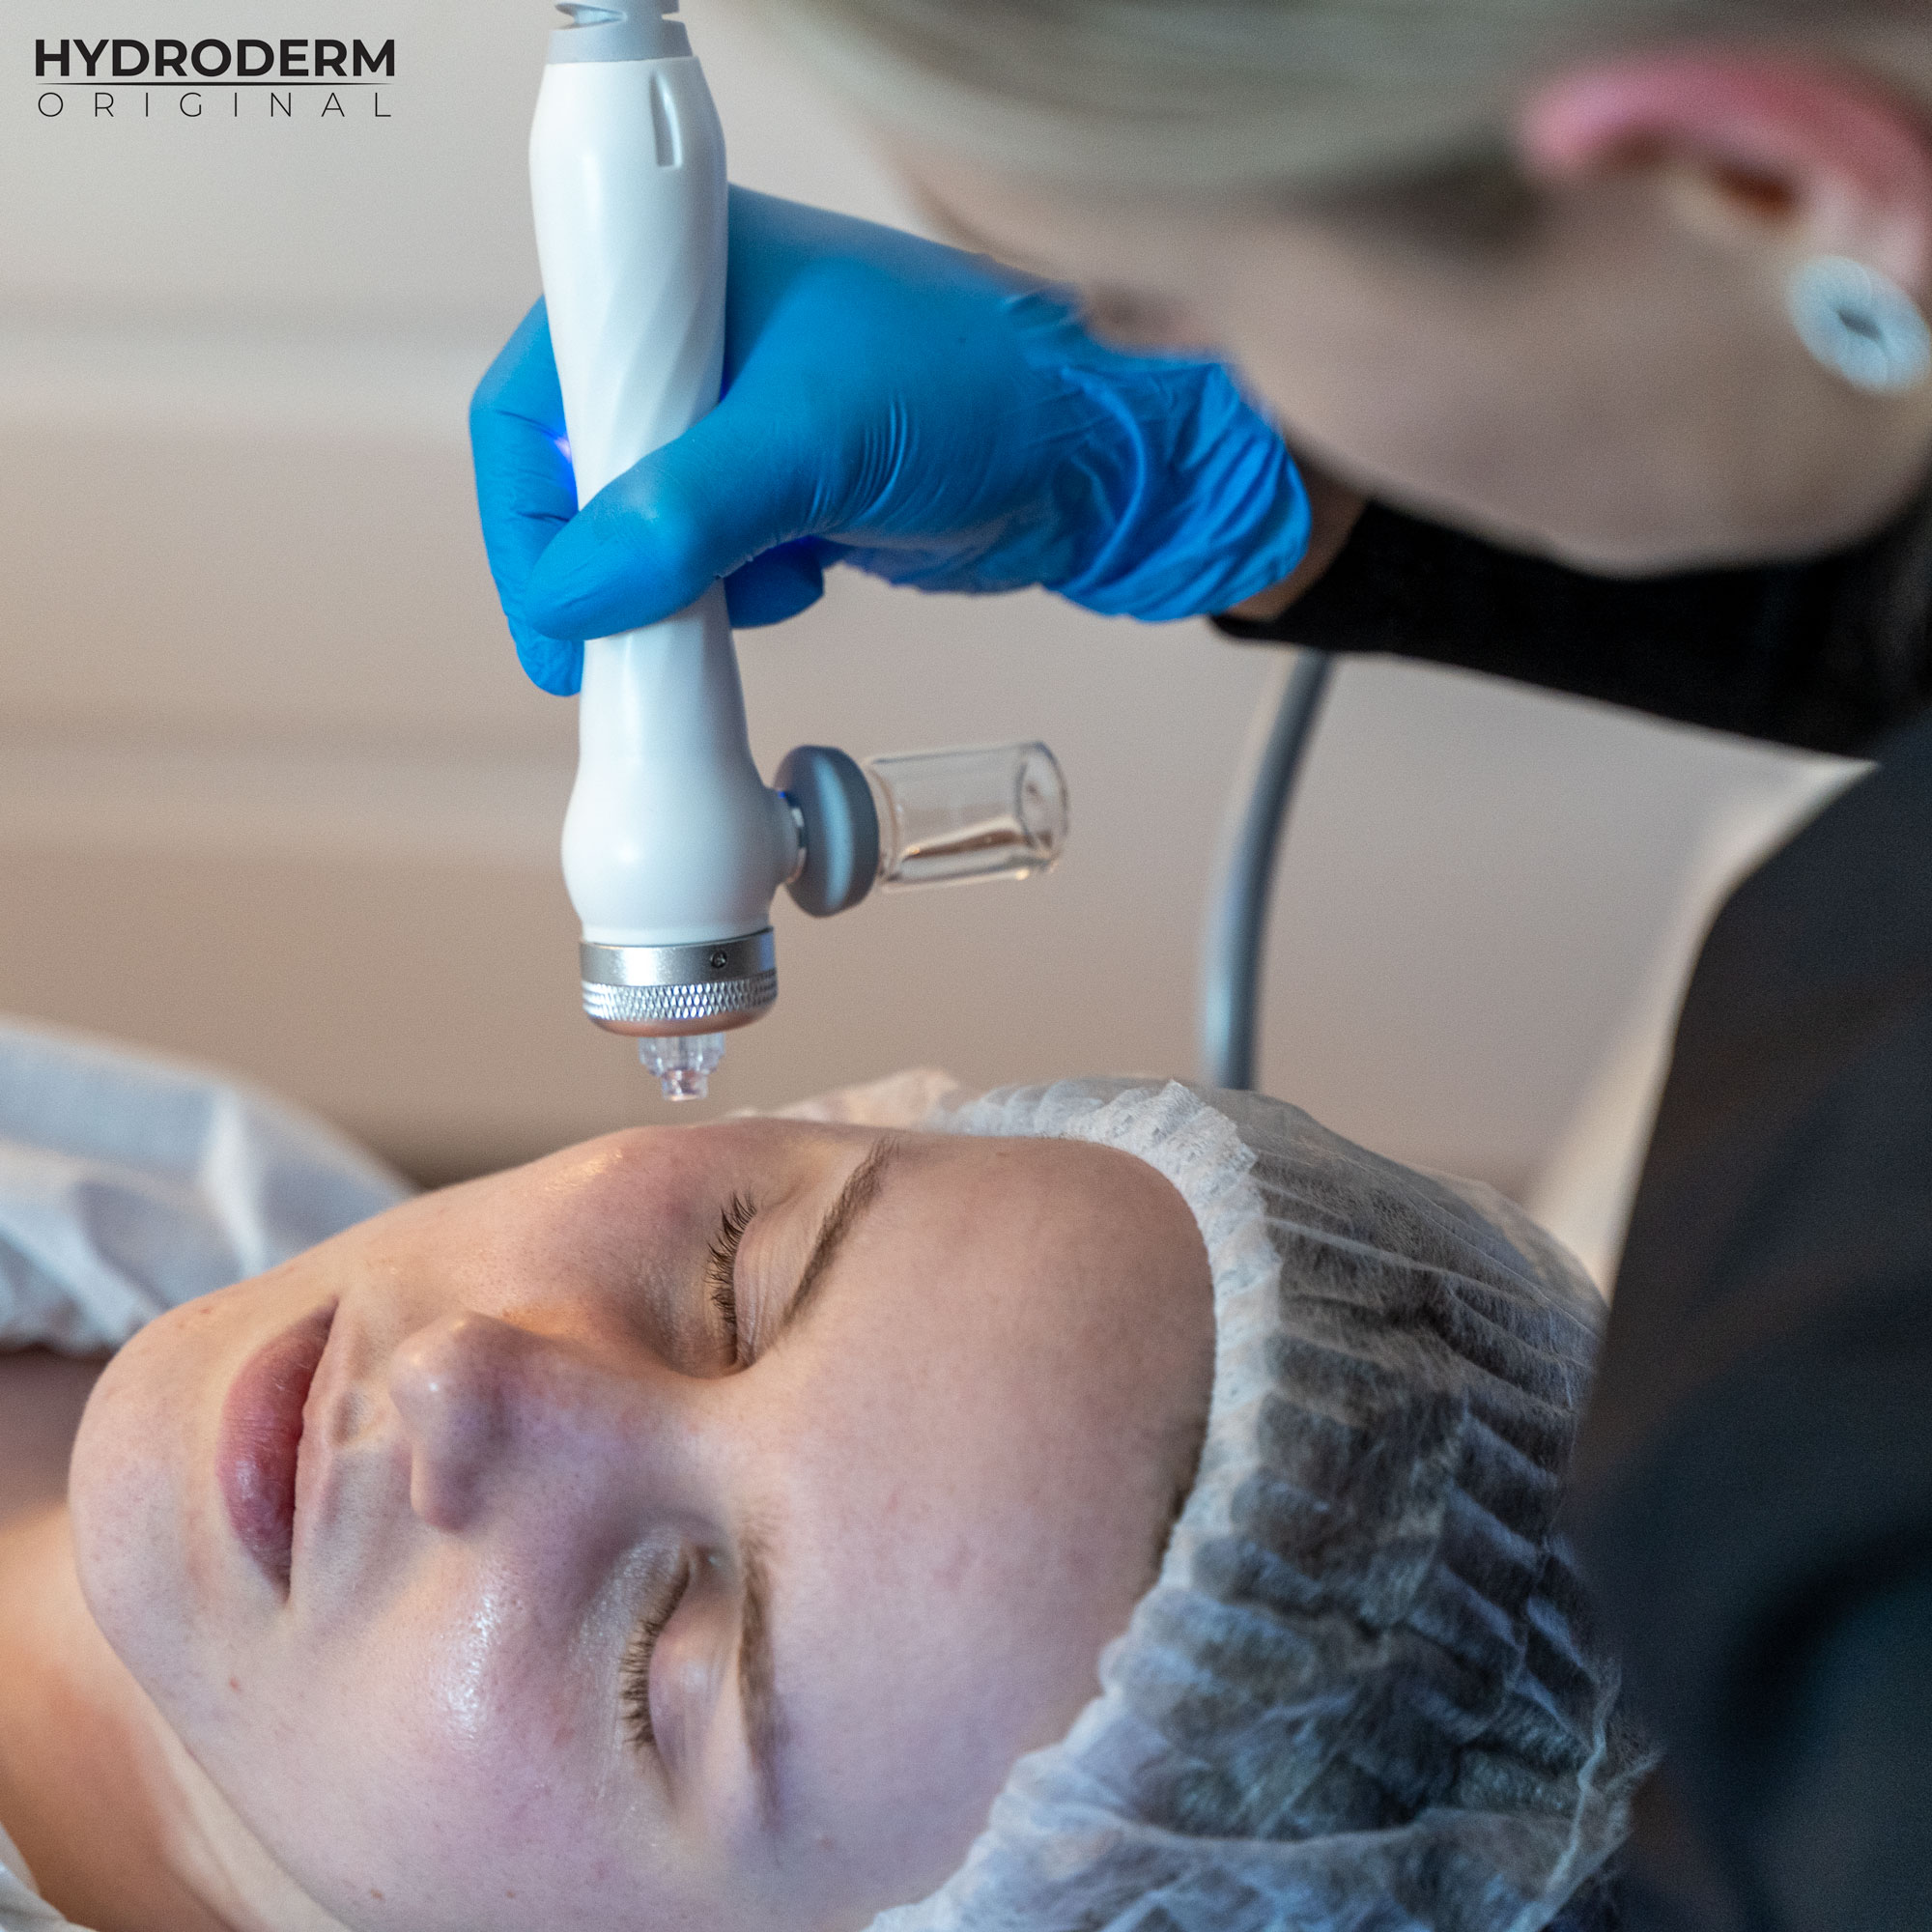 Infuzja wodorowa nie tylko oczyszcza, ale również wprowadza w głąb skóry potrzebne substancje z ampułek kosmetologicznych